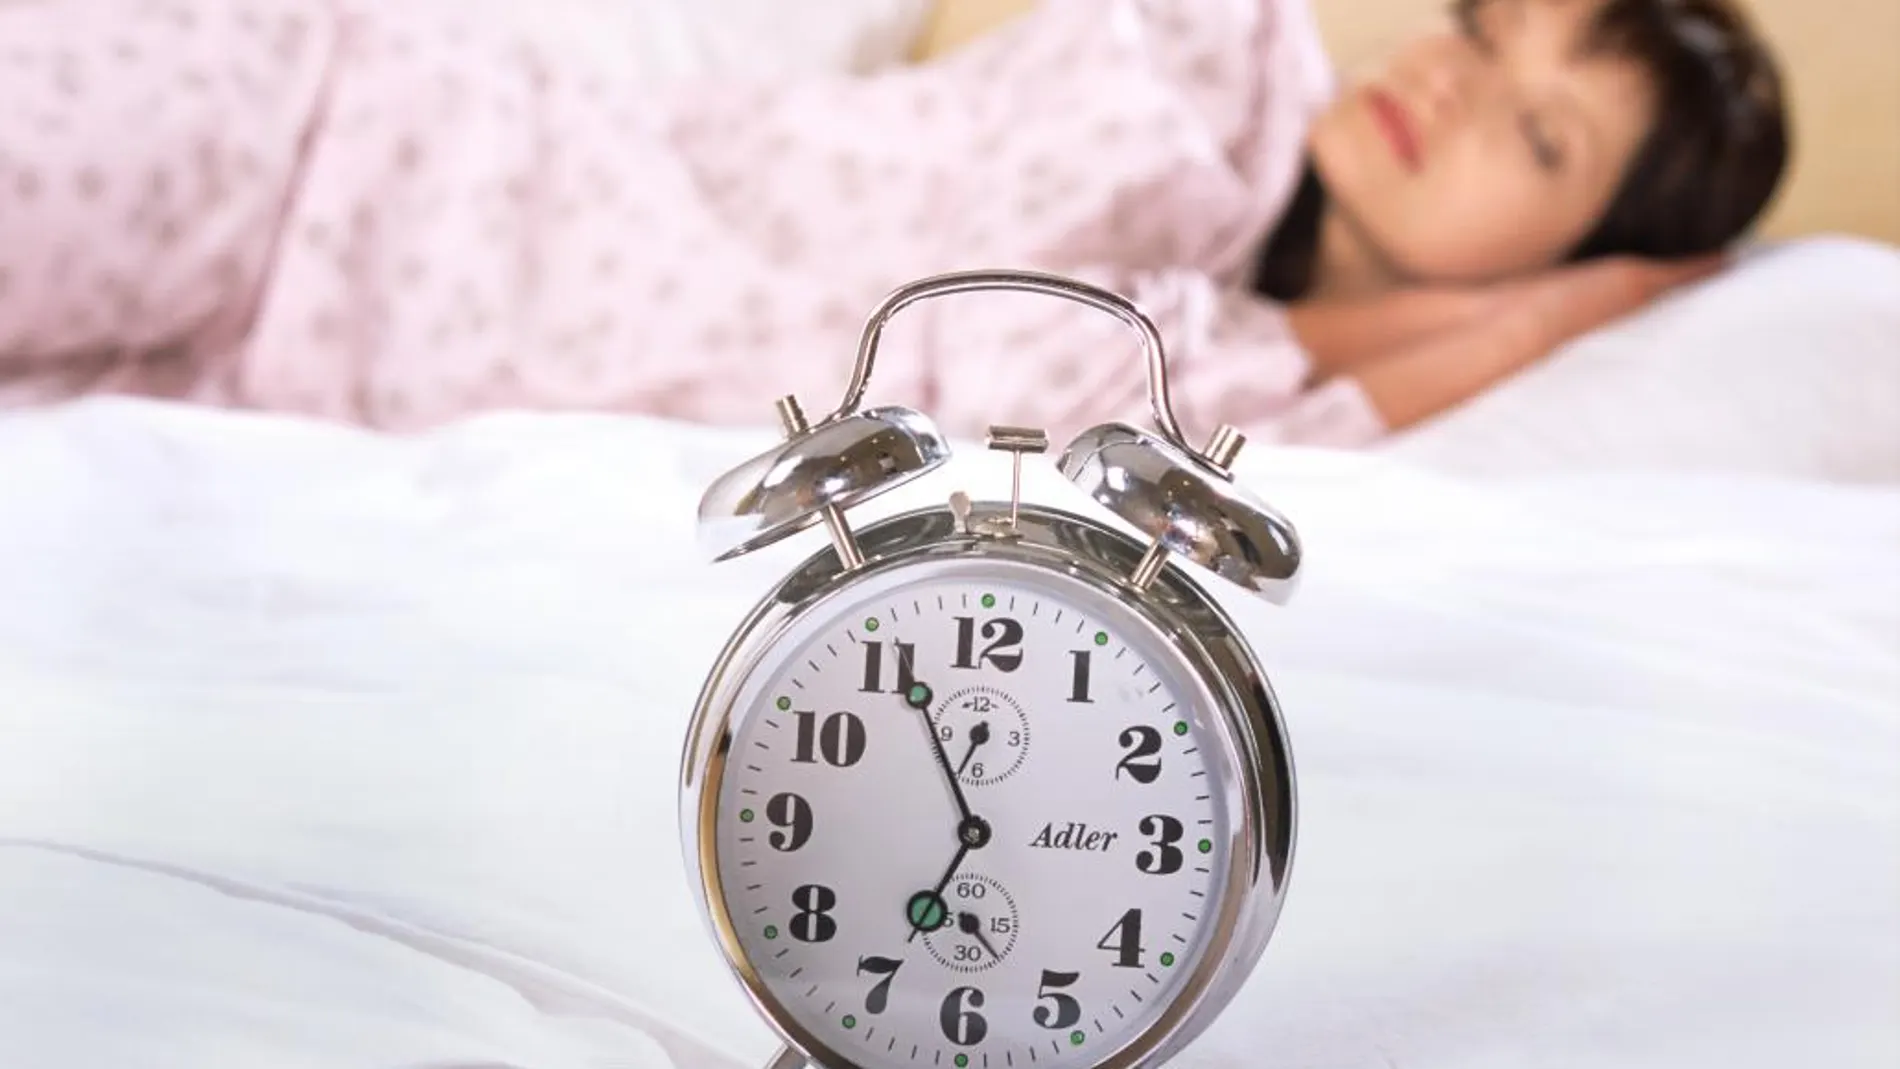 La hormona melatonina es la responsable de regular los ciclos sueño-vigilia, entre otras funciones.